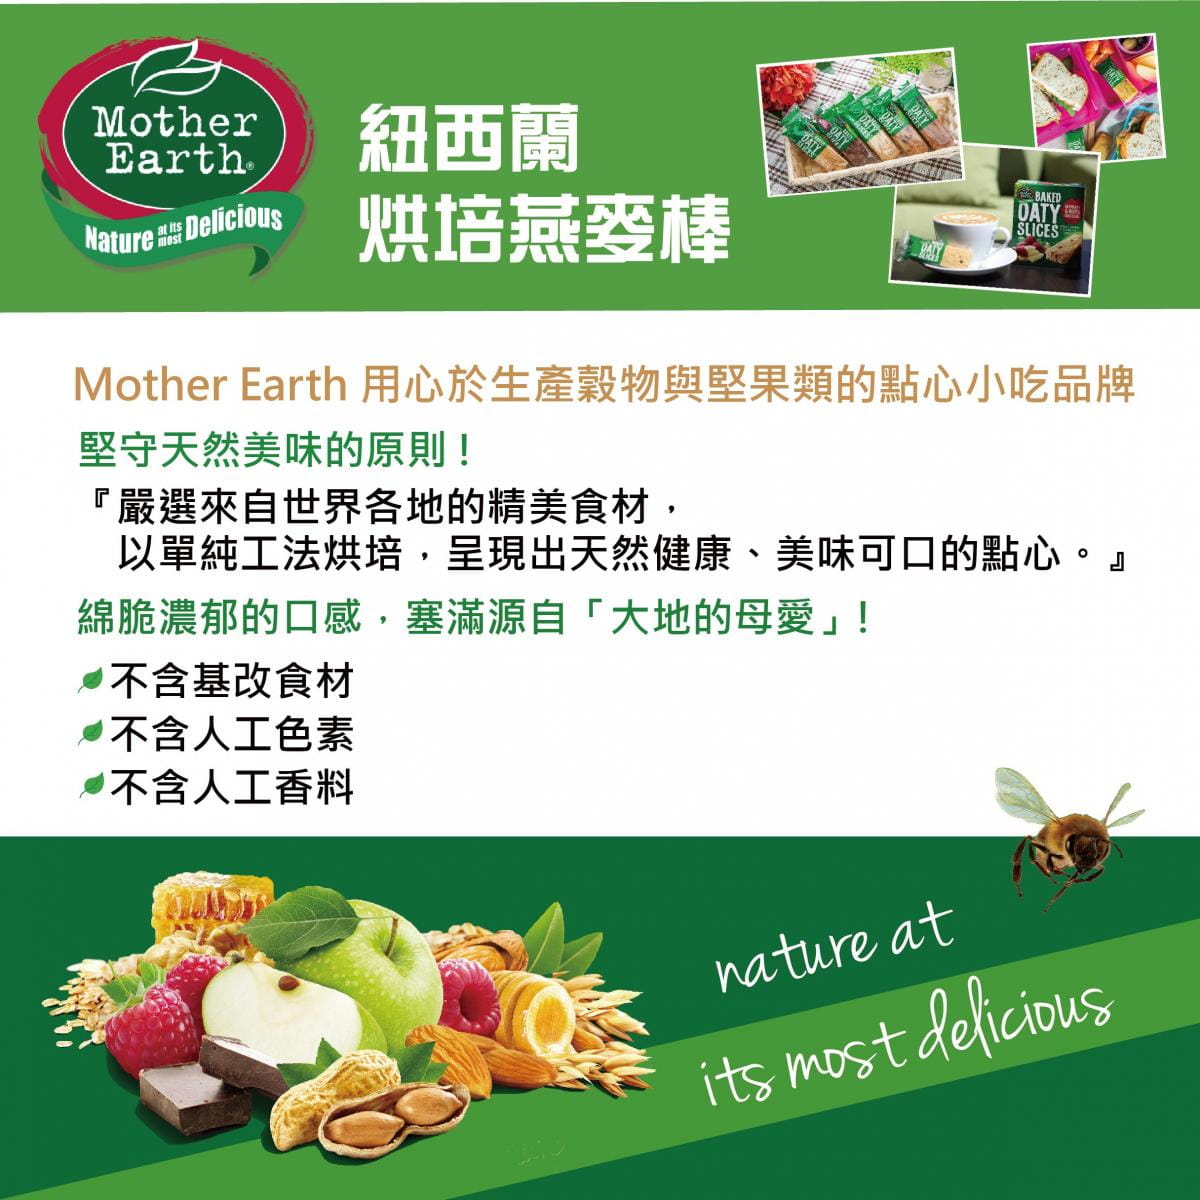 【紐西蘭 Mother Earth】【即期品】高油酸花生醬 - 搭贈「營養棒」試吃 10